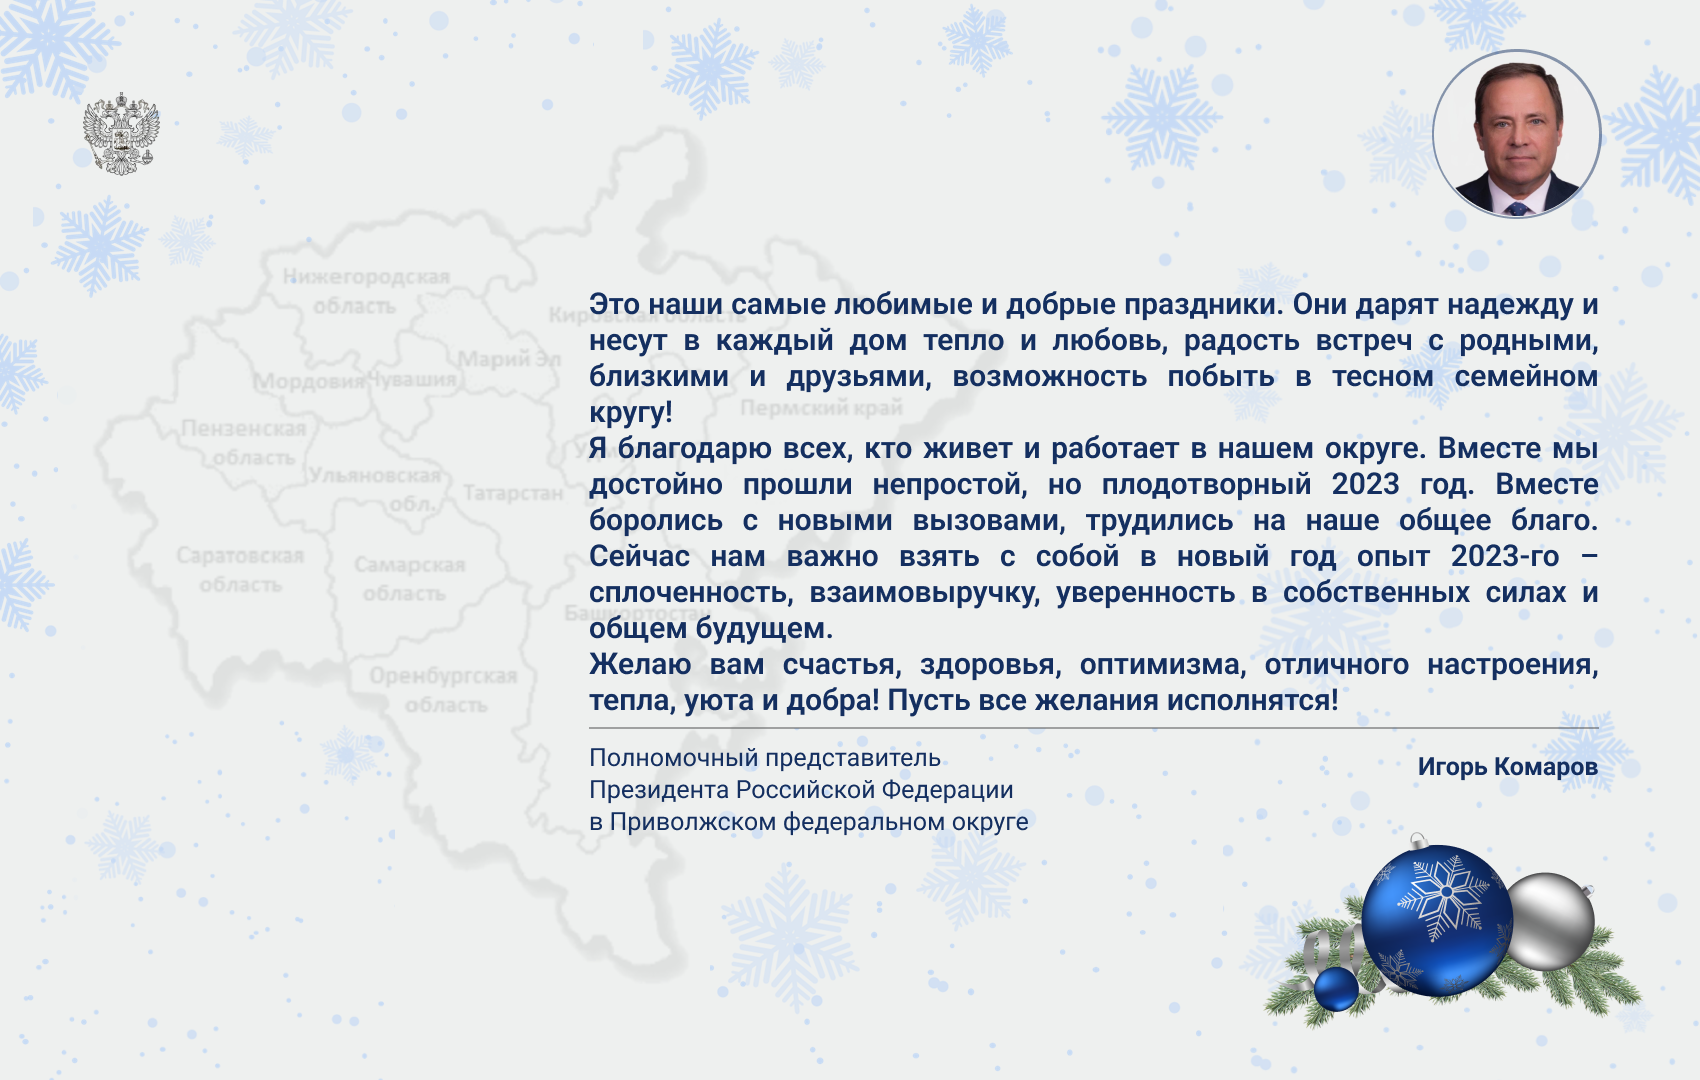 Игорь Комаров поздравил жителей ПФО с Новым годом и Рождеством.